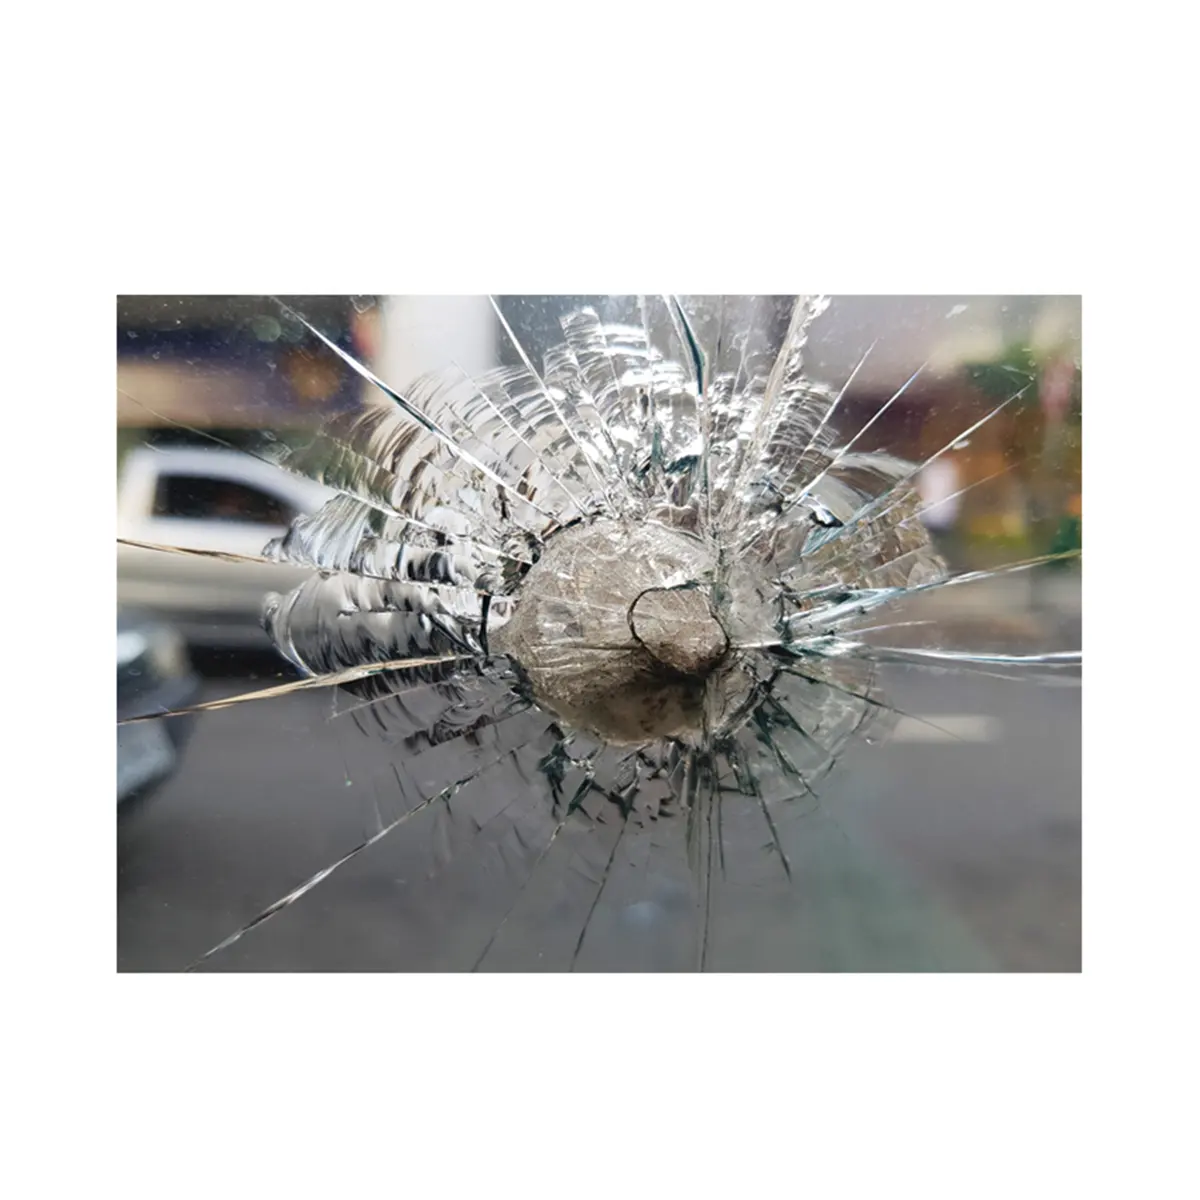 侵入不可能な弾丸耐性ガラスによるリスクの高い状況での弾丸耐性ガラスの耐力保護